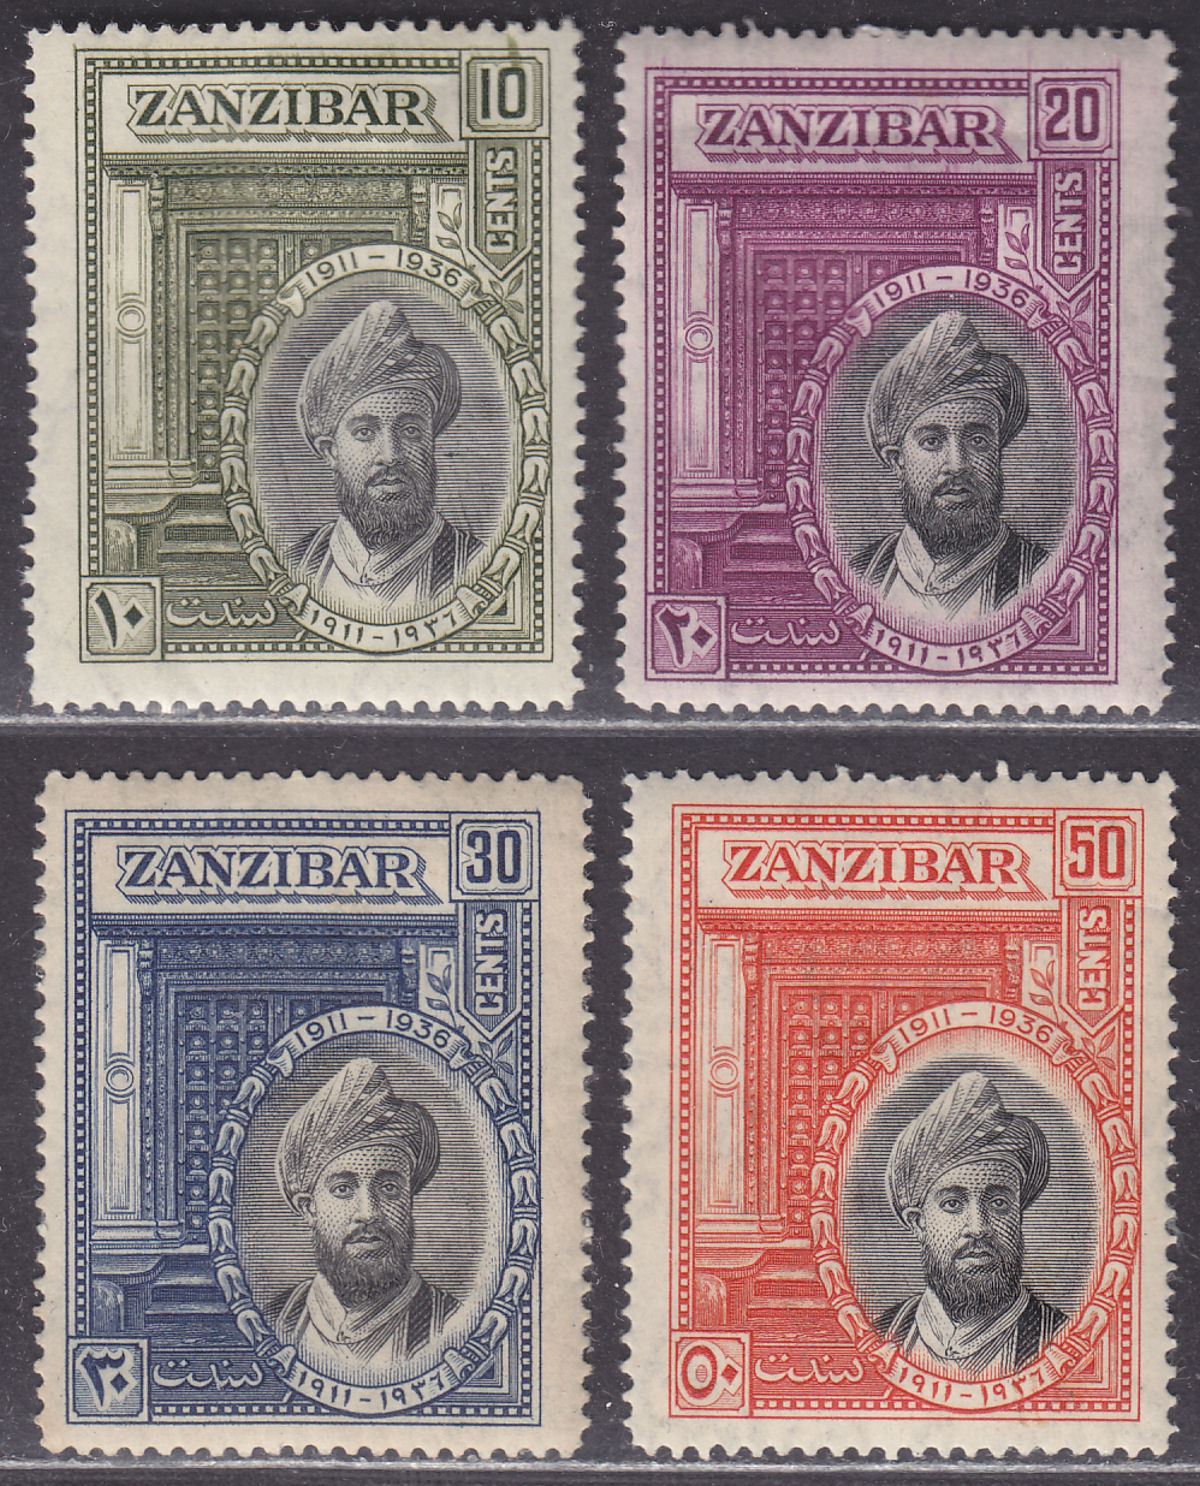 Zanzibar 1936 Silver Jubilee of Sultan Set Mint SG323-326 cat £35